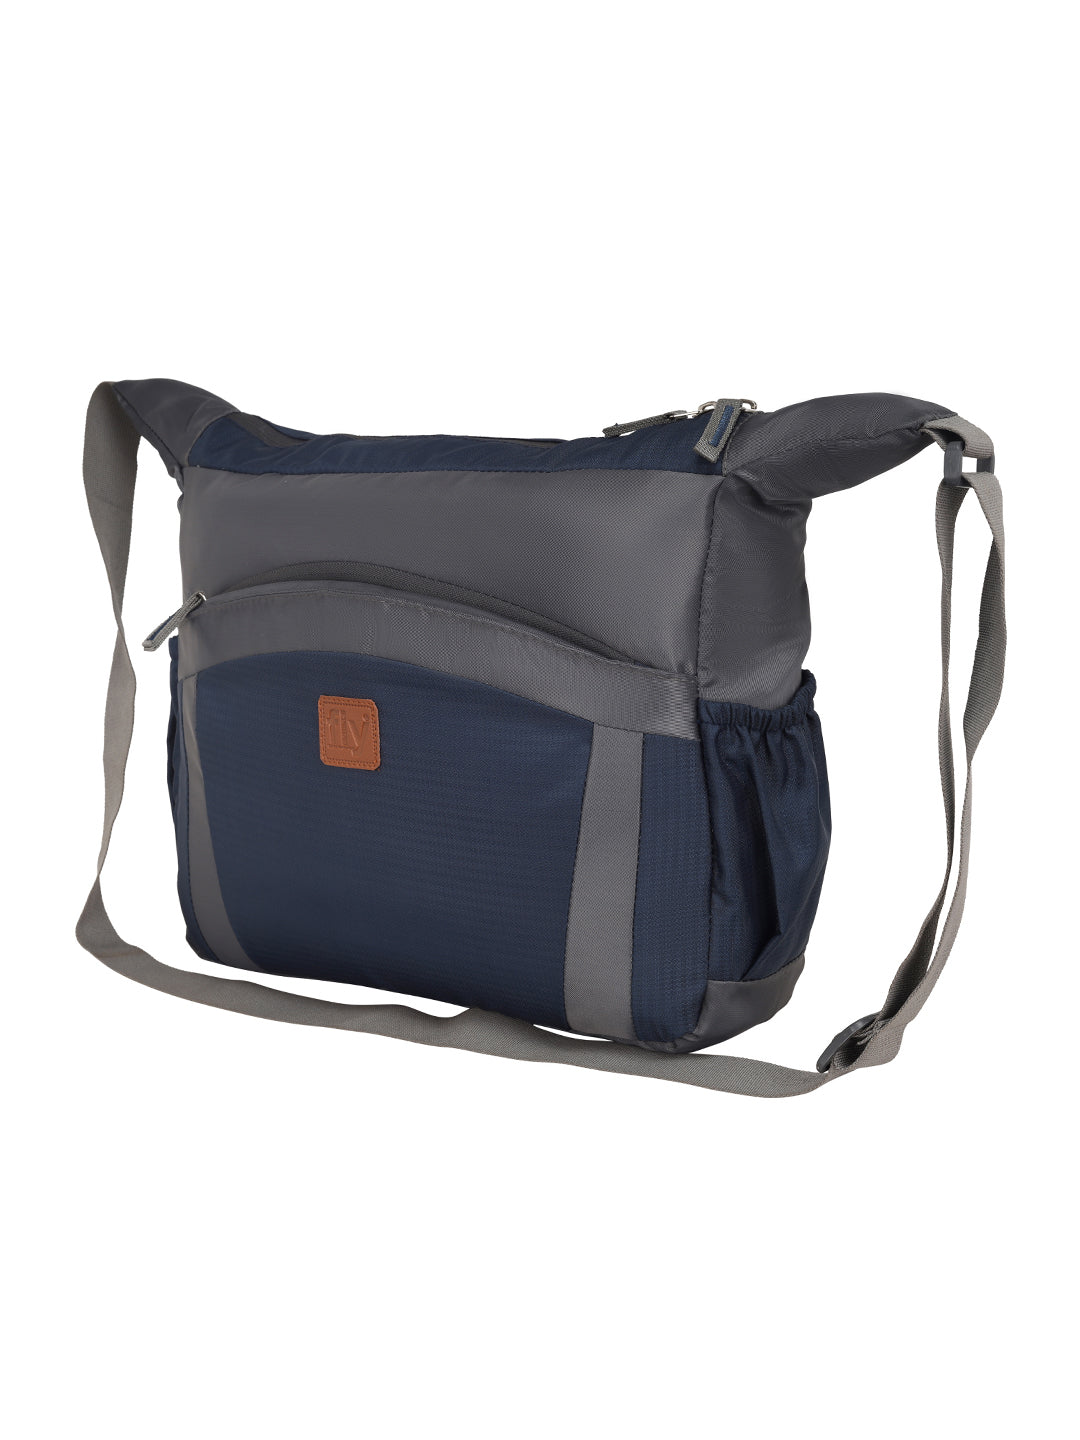 Buy Messenger Bag  Bageek Men Shoulder Bag Splashproof Oxford Cross Body Bag  Side Bag Online at desertcartINDIA